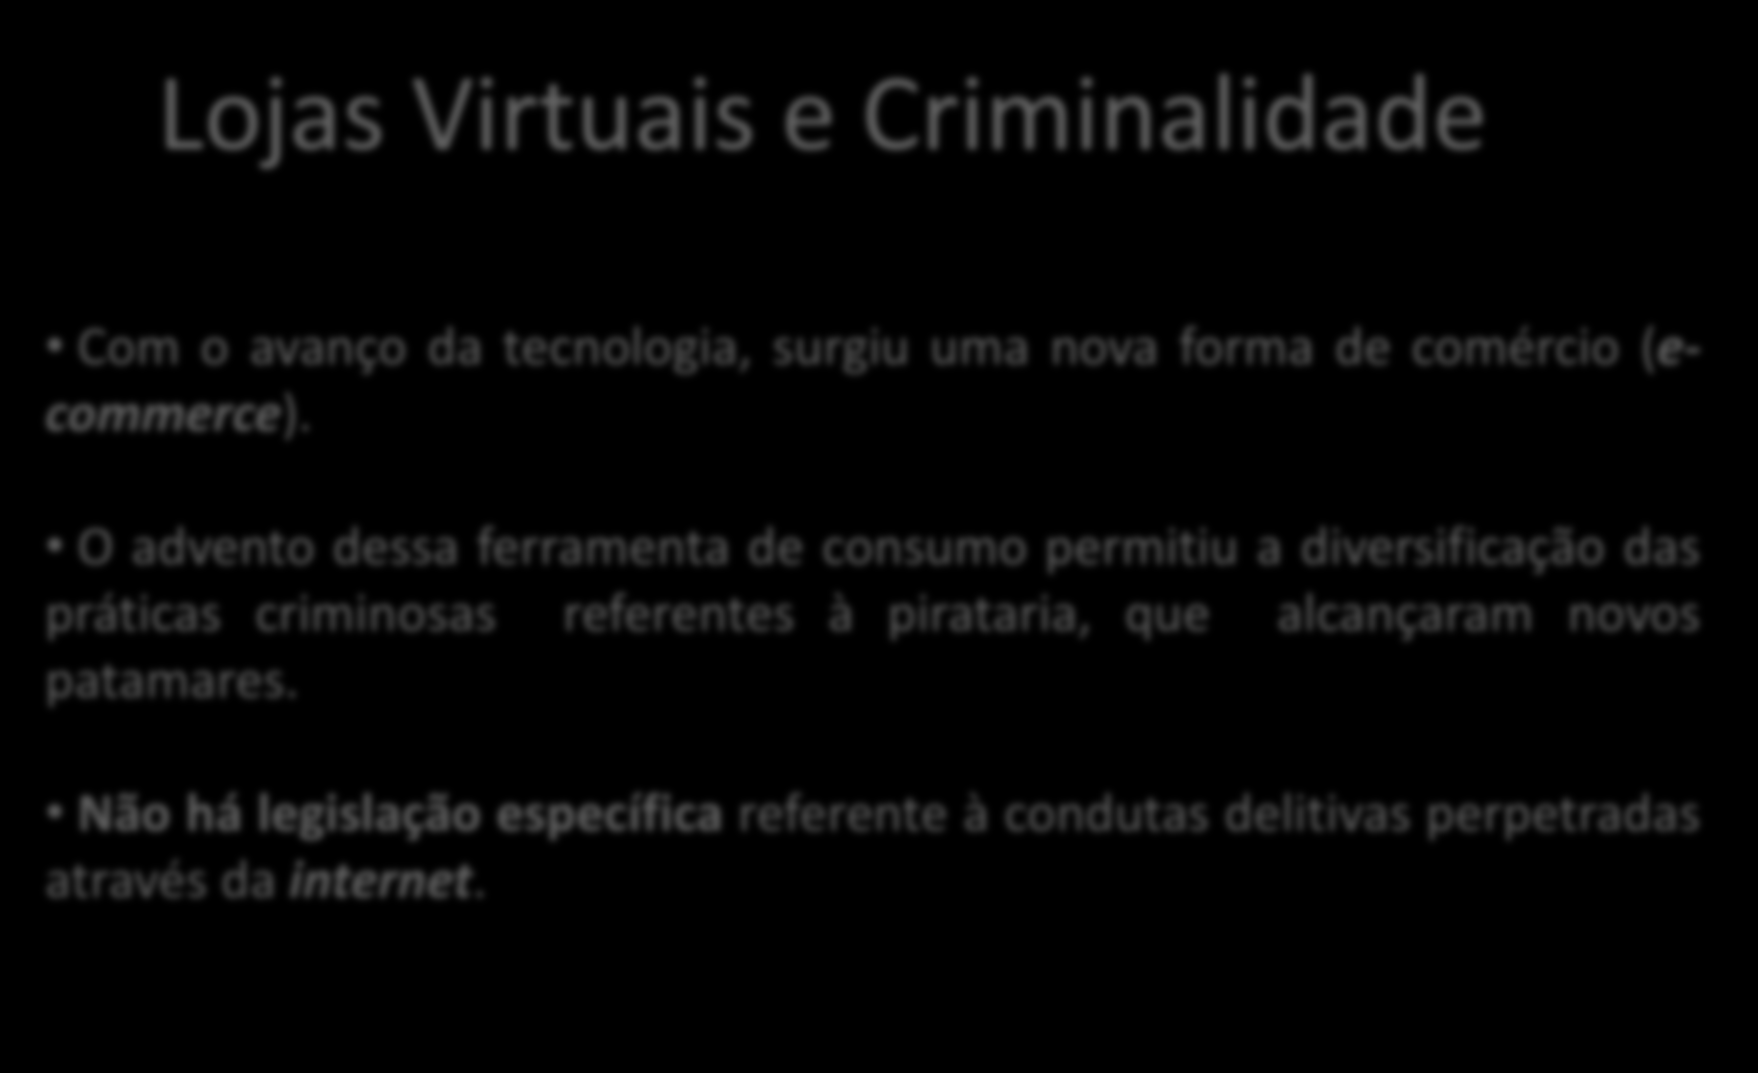 Lojas Virtuais e Criminalidade Com o avanço da tecnologia, surgiu uma nova forma de comércio (ecommerce).